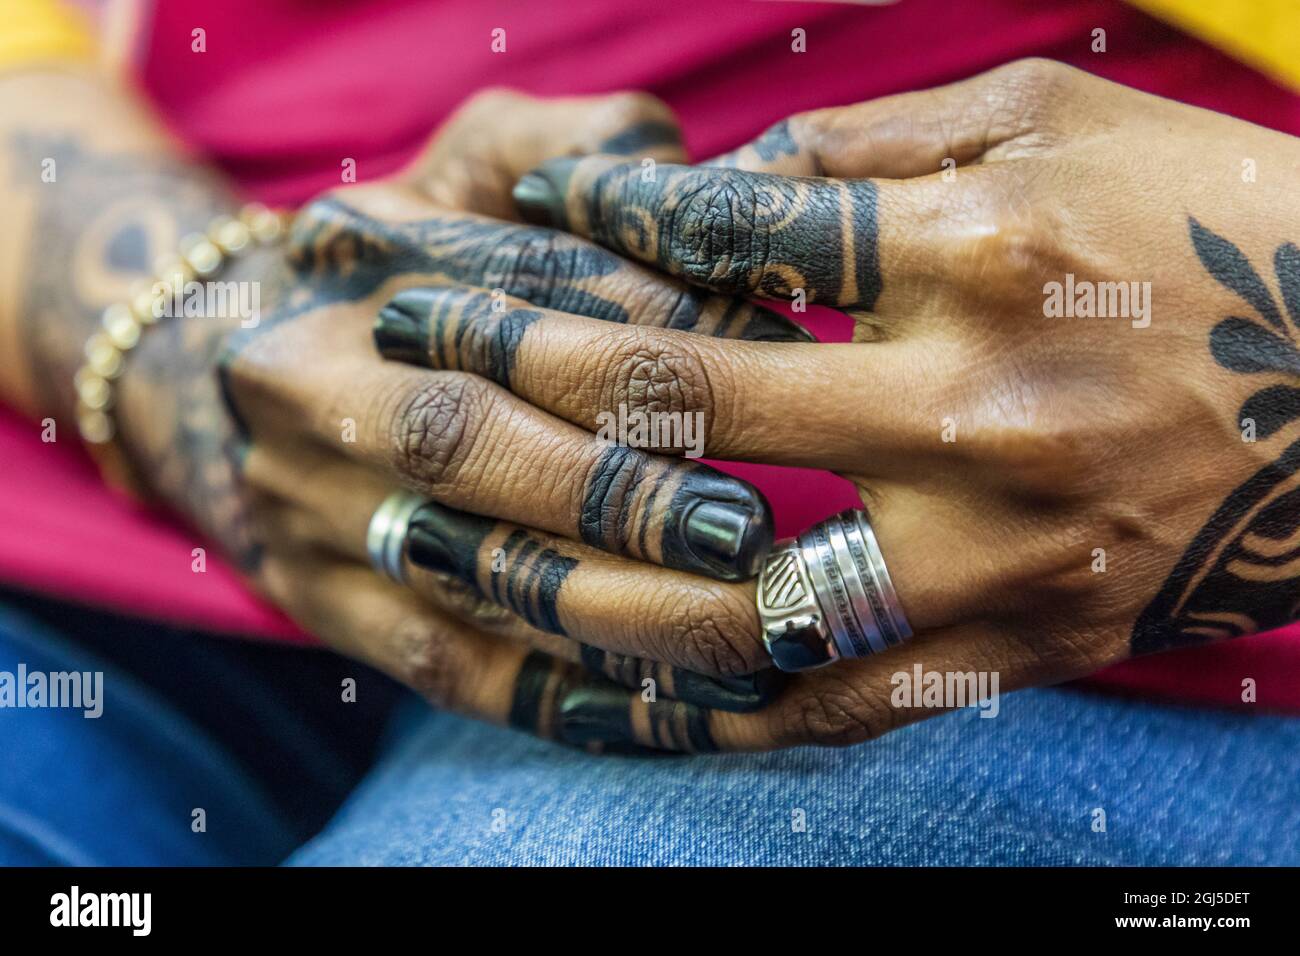 Afrika, Ägypten, Luxor. 21. September 2018. Weibliche Hände mit Henna-Applikation. (Nur Für Redaktionelle Zwecke) Stockfoto